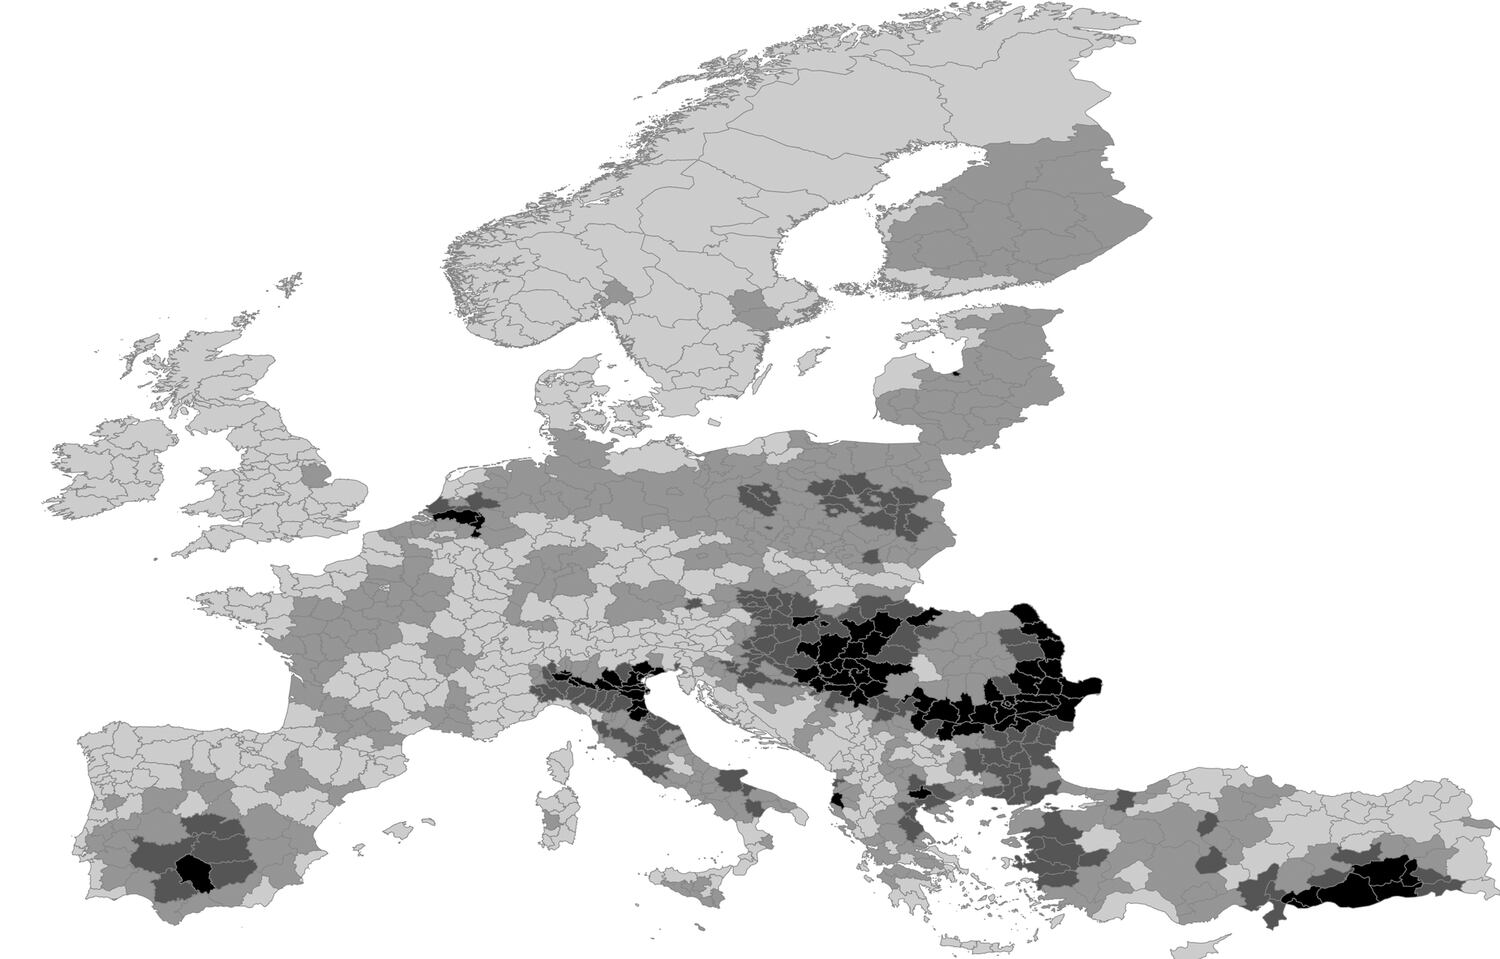 Zonas de Europa más susceptibles para la expansión del virus del Nilo. Los tonos más oscuros muestran las áreas con más riesgo.